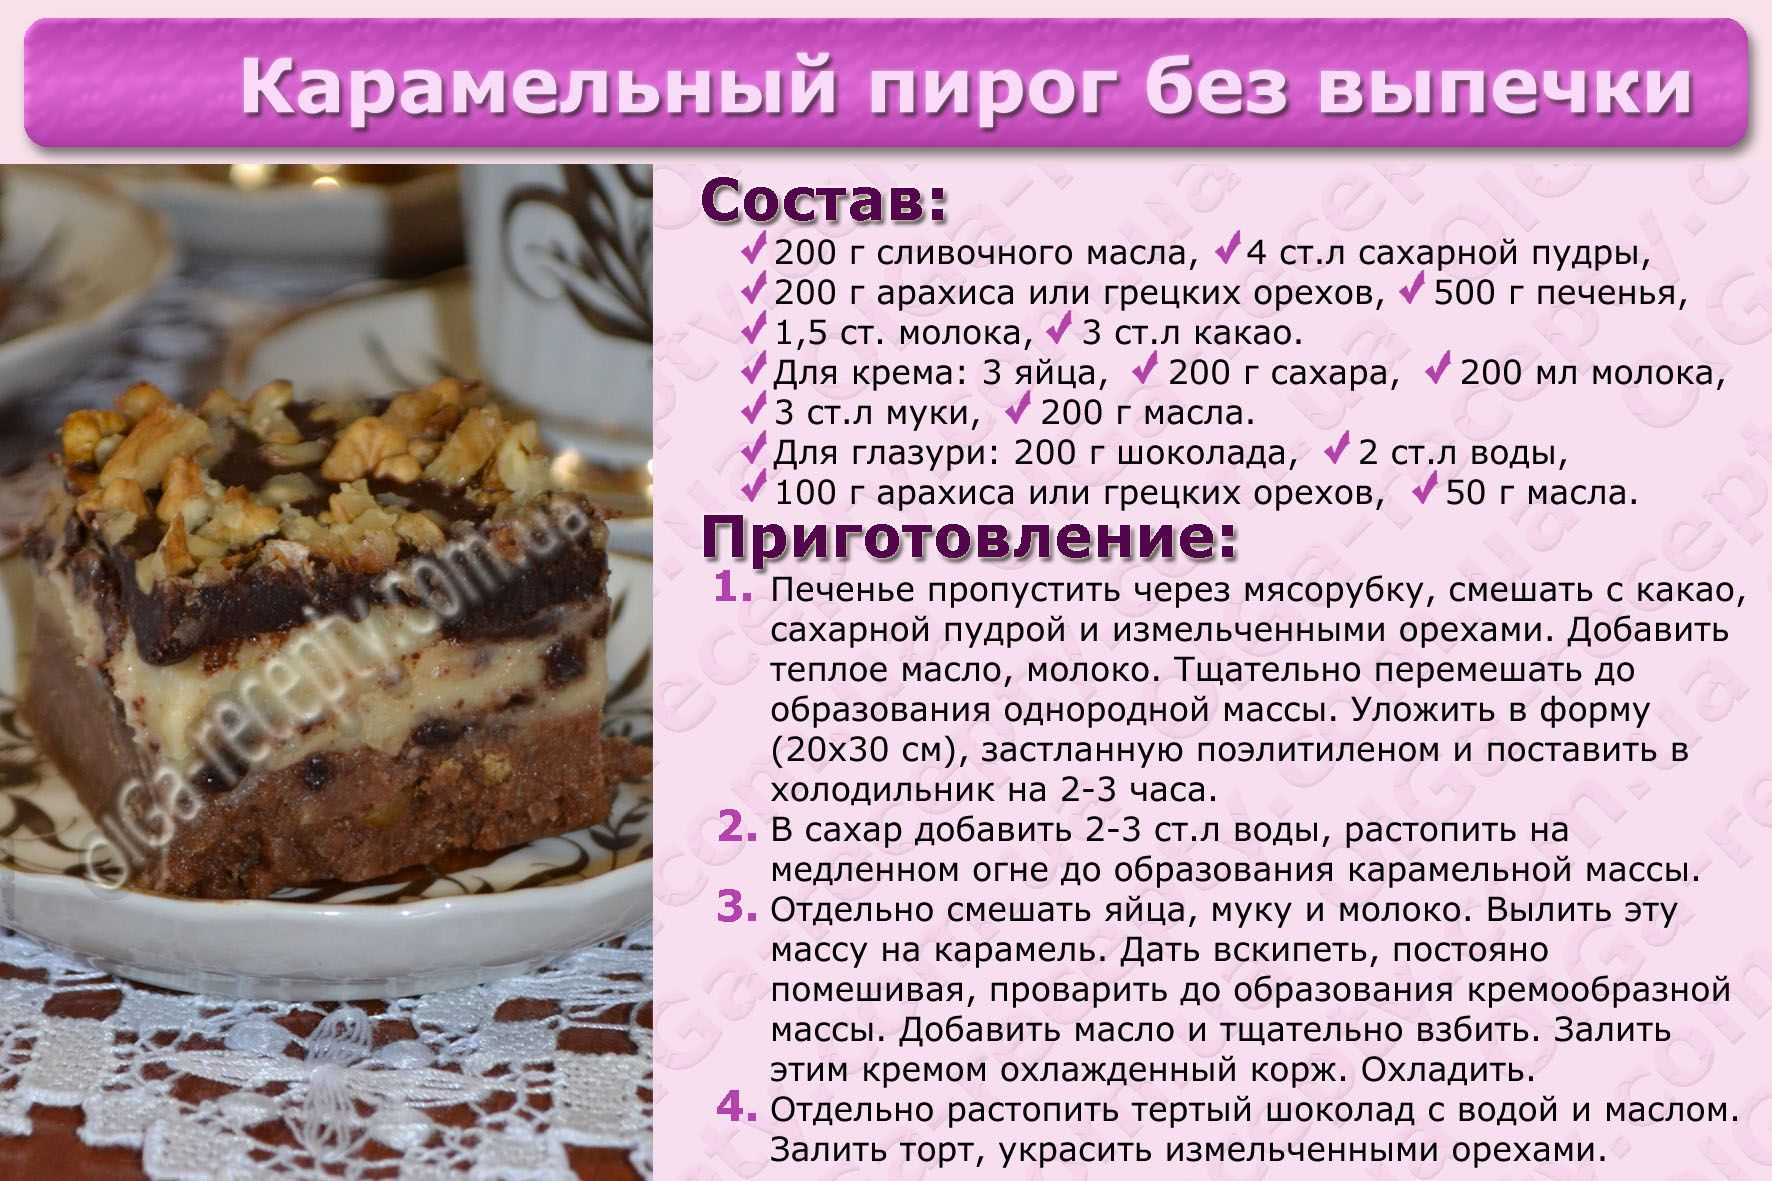 Рецепты торта ру. Рецепты тортов с описанием. Рецепты выпечки в картинках. Выпечка рецепты с описанием. Картинки с рецептами тортов.